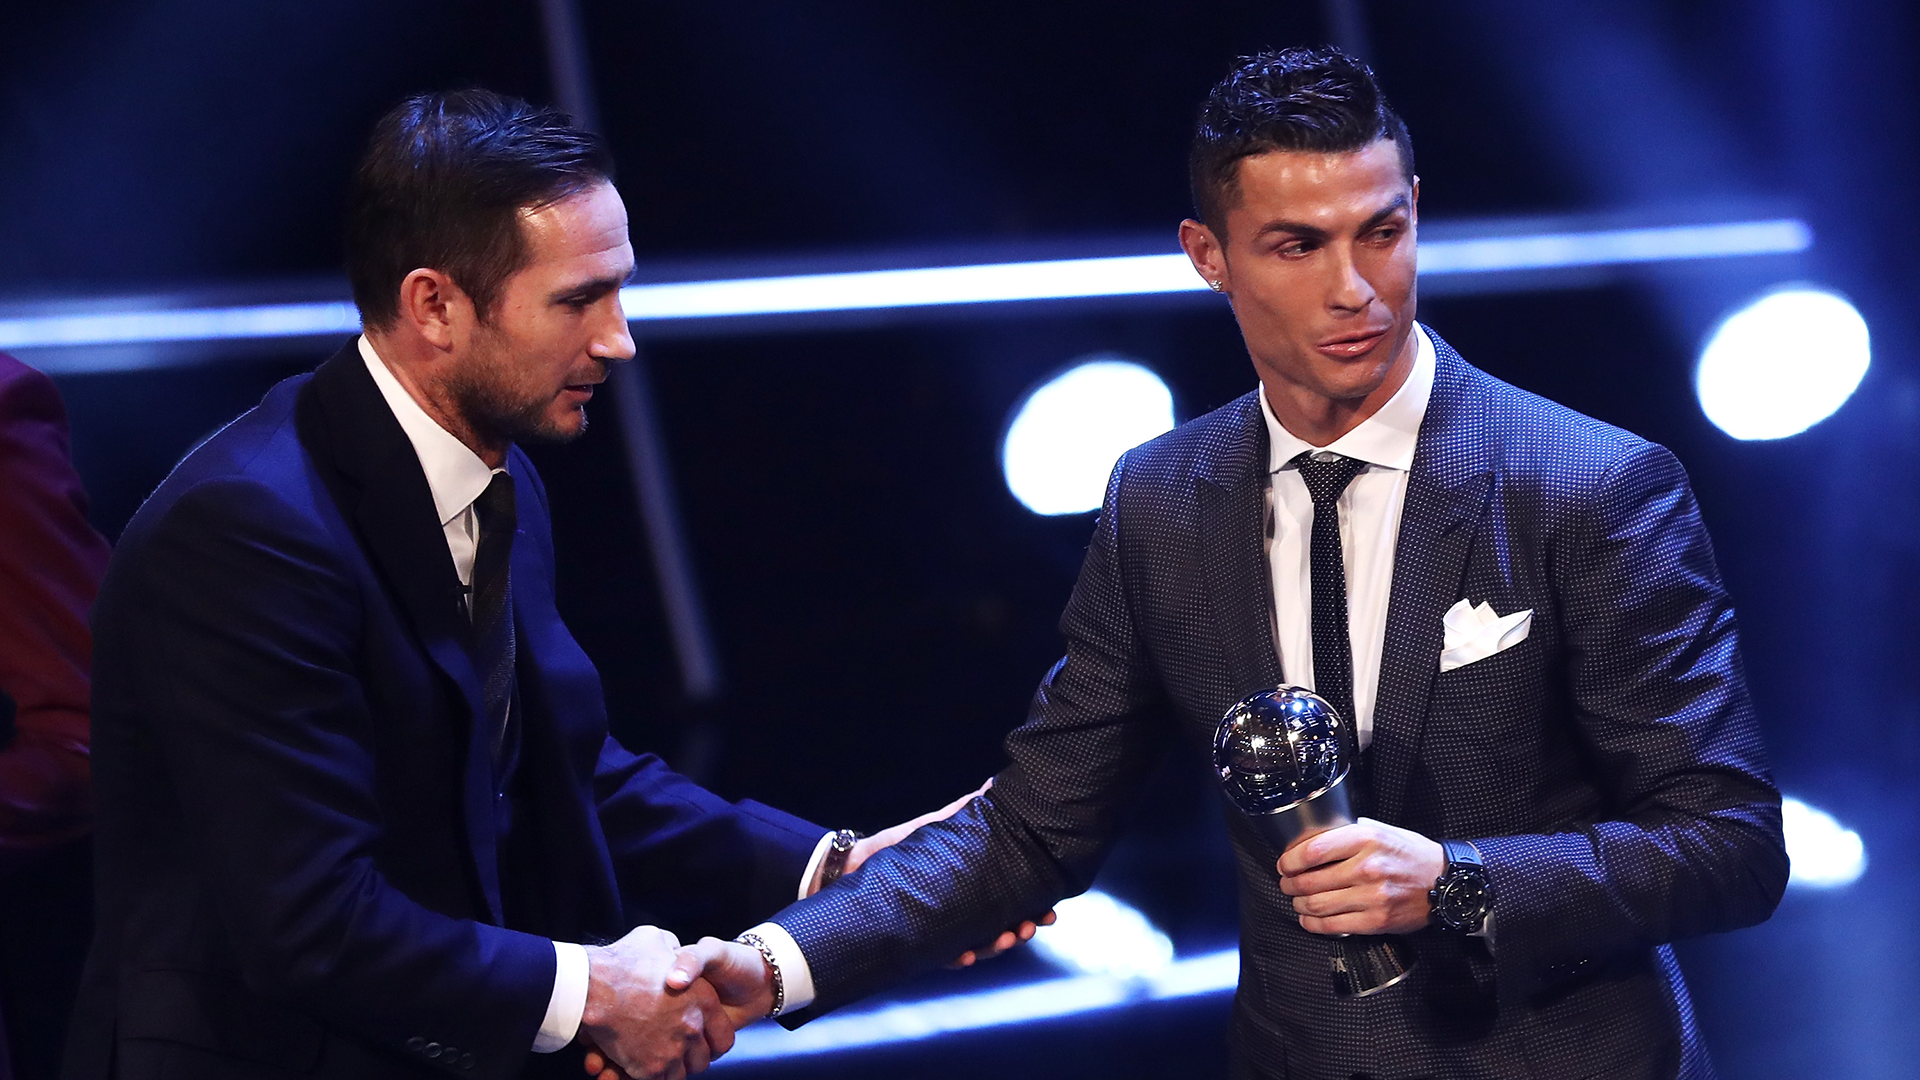 Cristiano Ronaldo Best FIFA Awards 2017